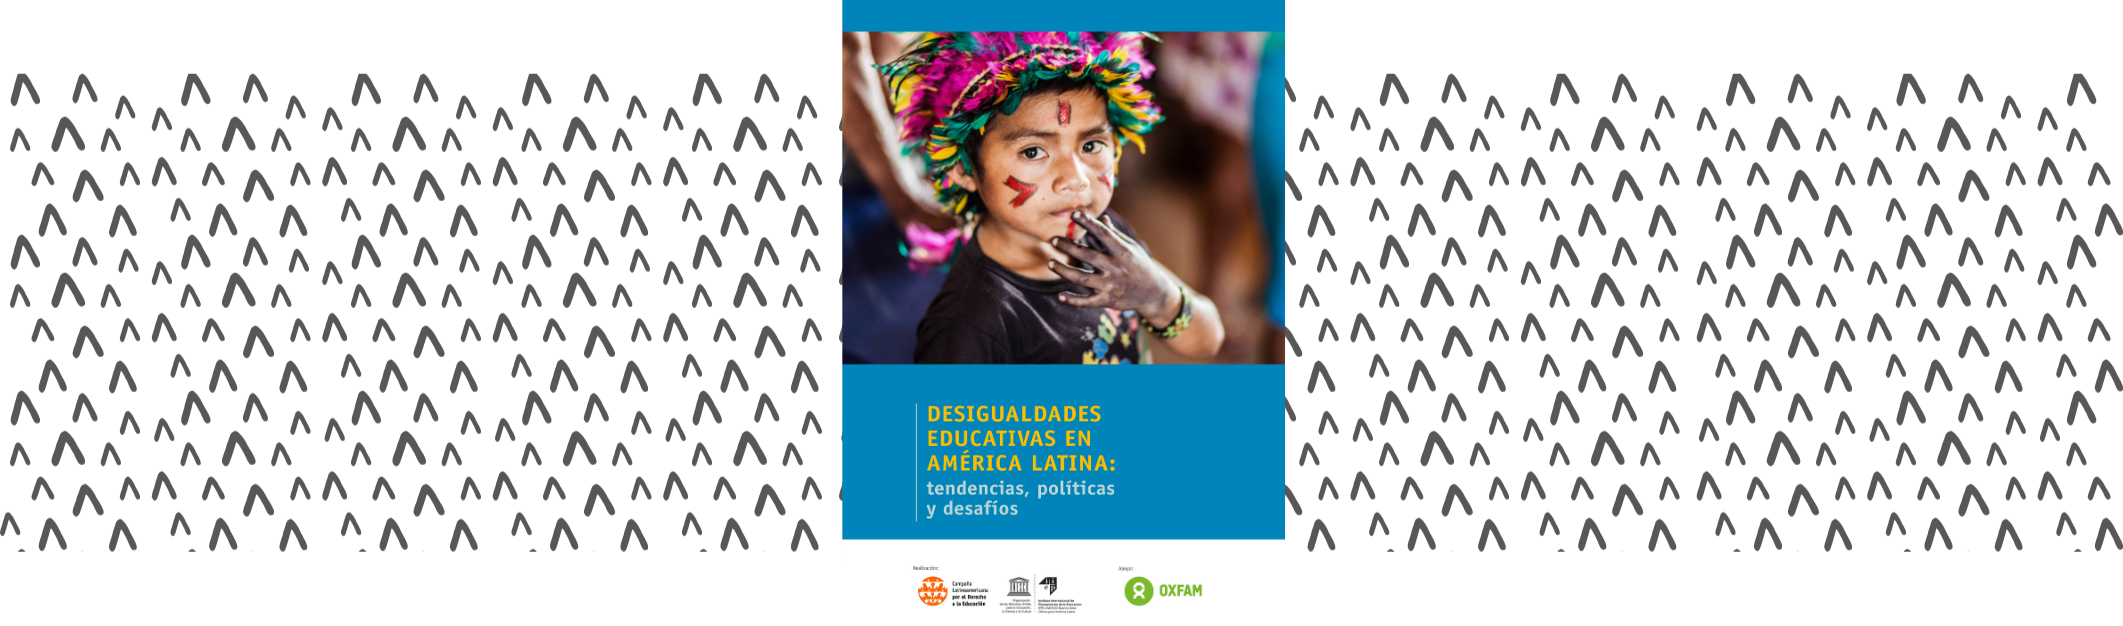 Desigualdades educativas en América Latina: tendencias, políticas y desafíos